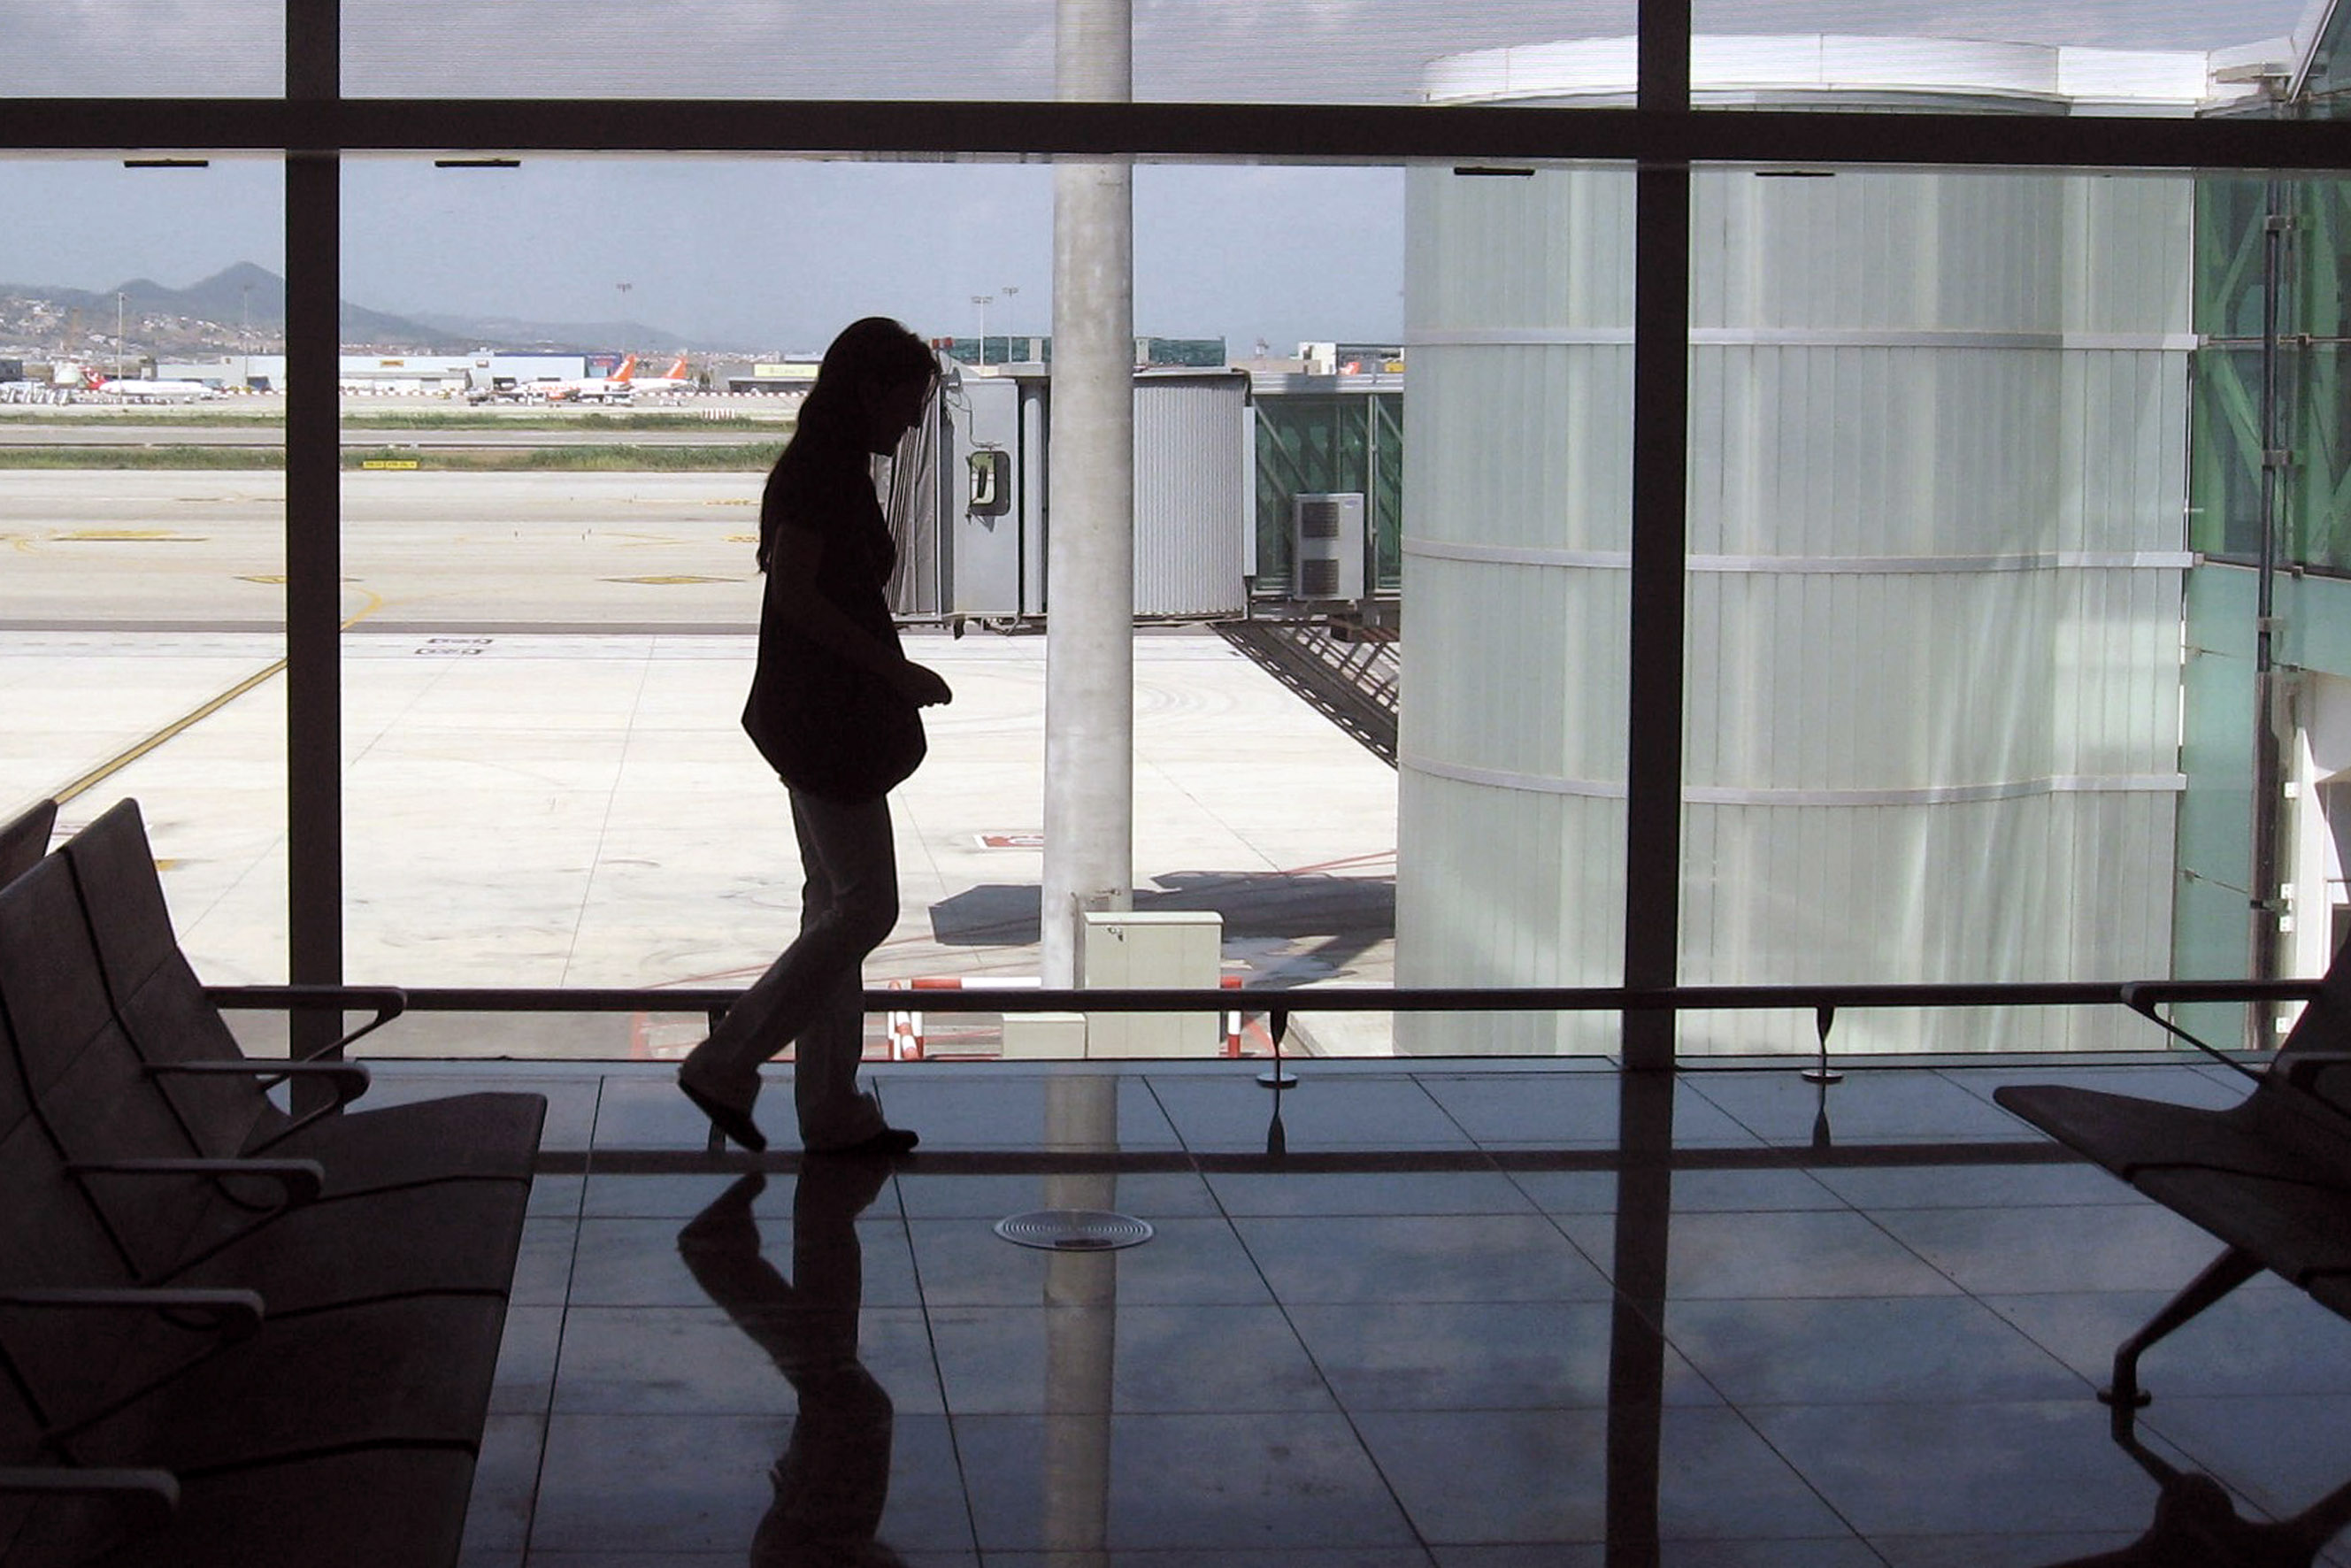 Barcelona El Prat airport was Spain's busiest airport in August (by ACN)